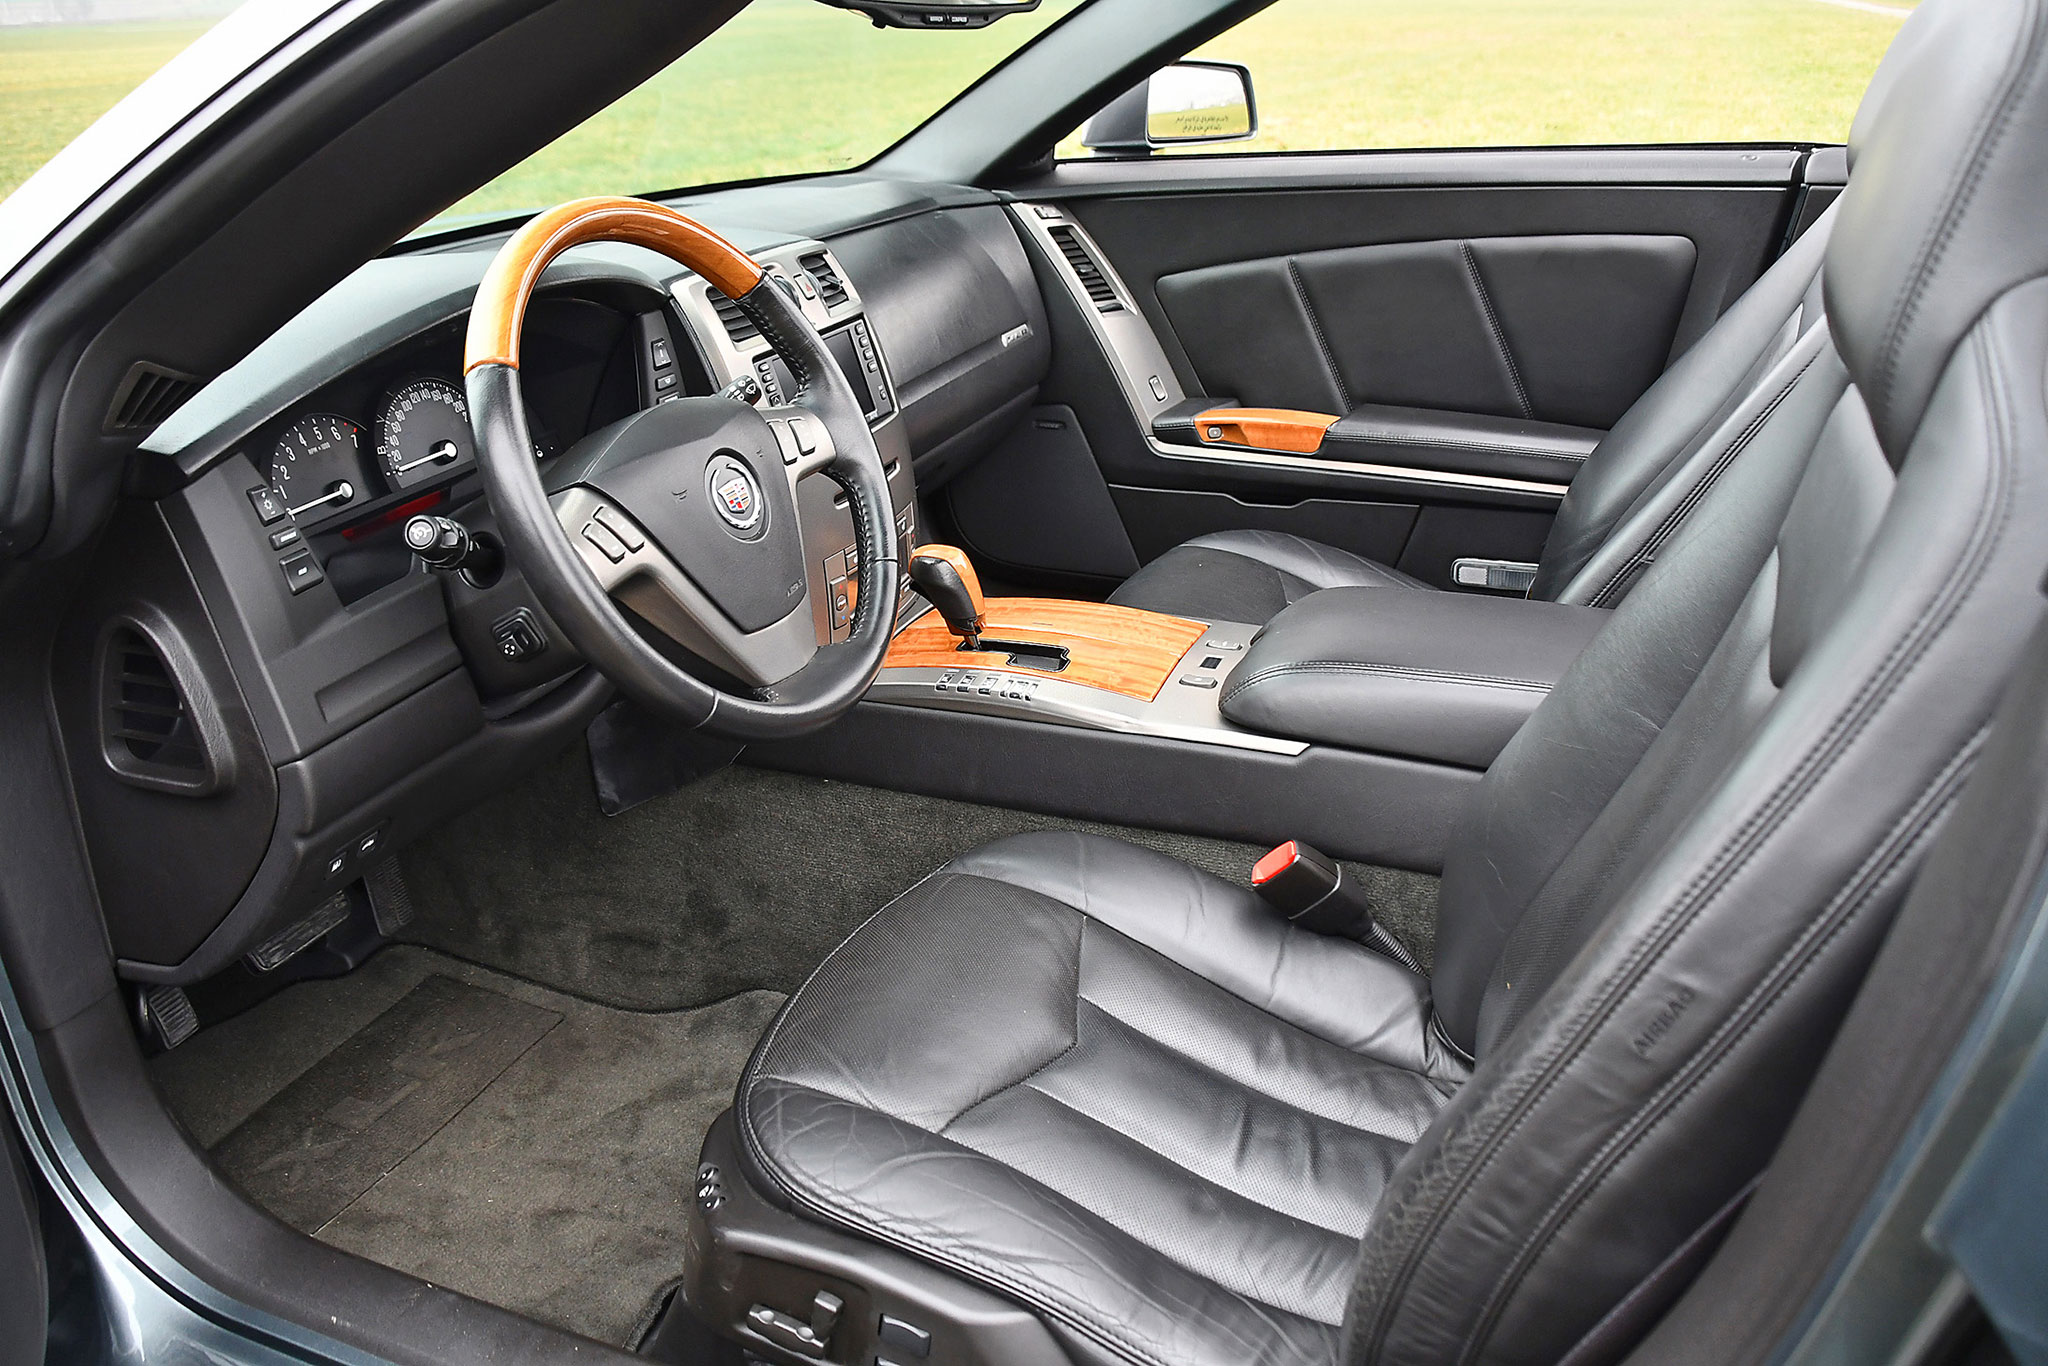 2004 Cadillac XLR 4.6 – magnifique présentation intérieure digne des meilleures allemandes.